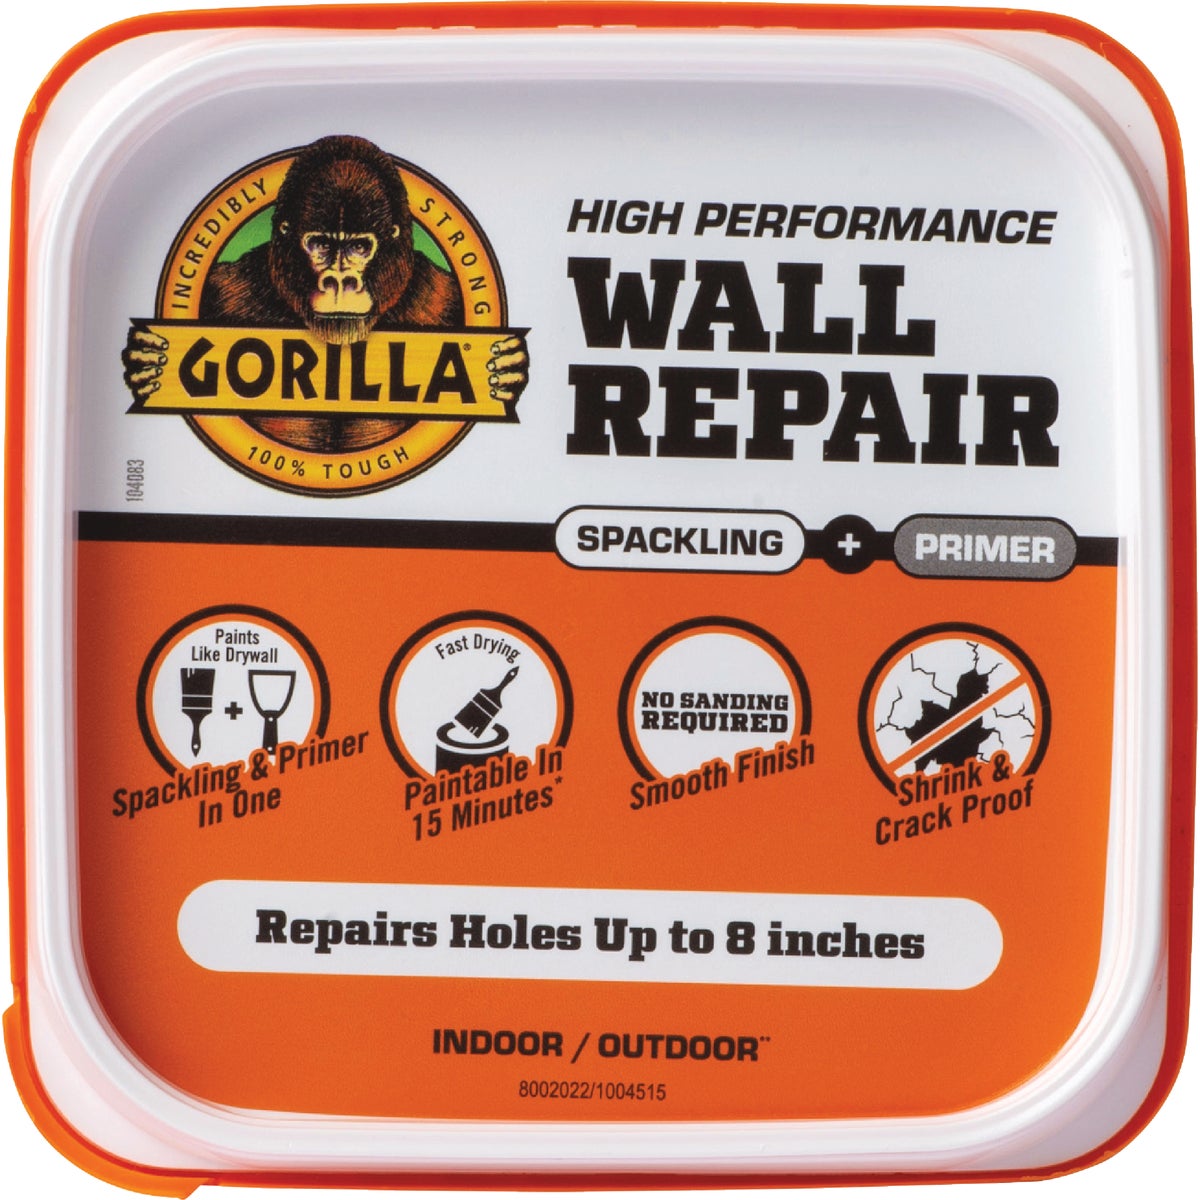 Gorilla 16 Oz. Wall Repair Spackling & Primer